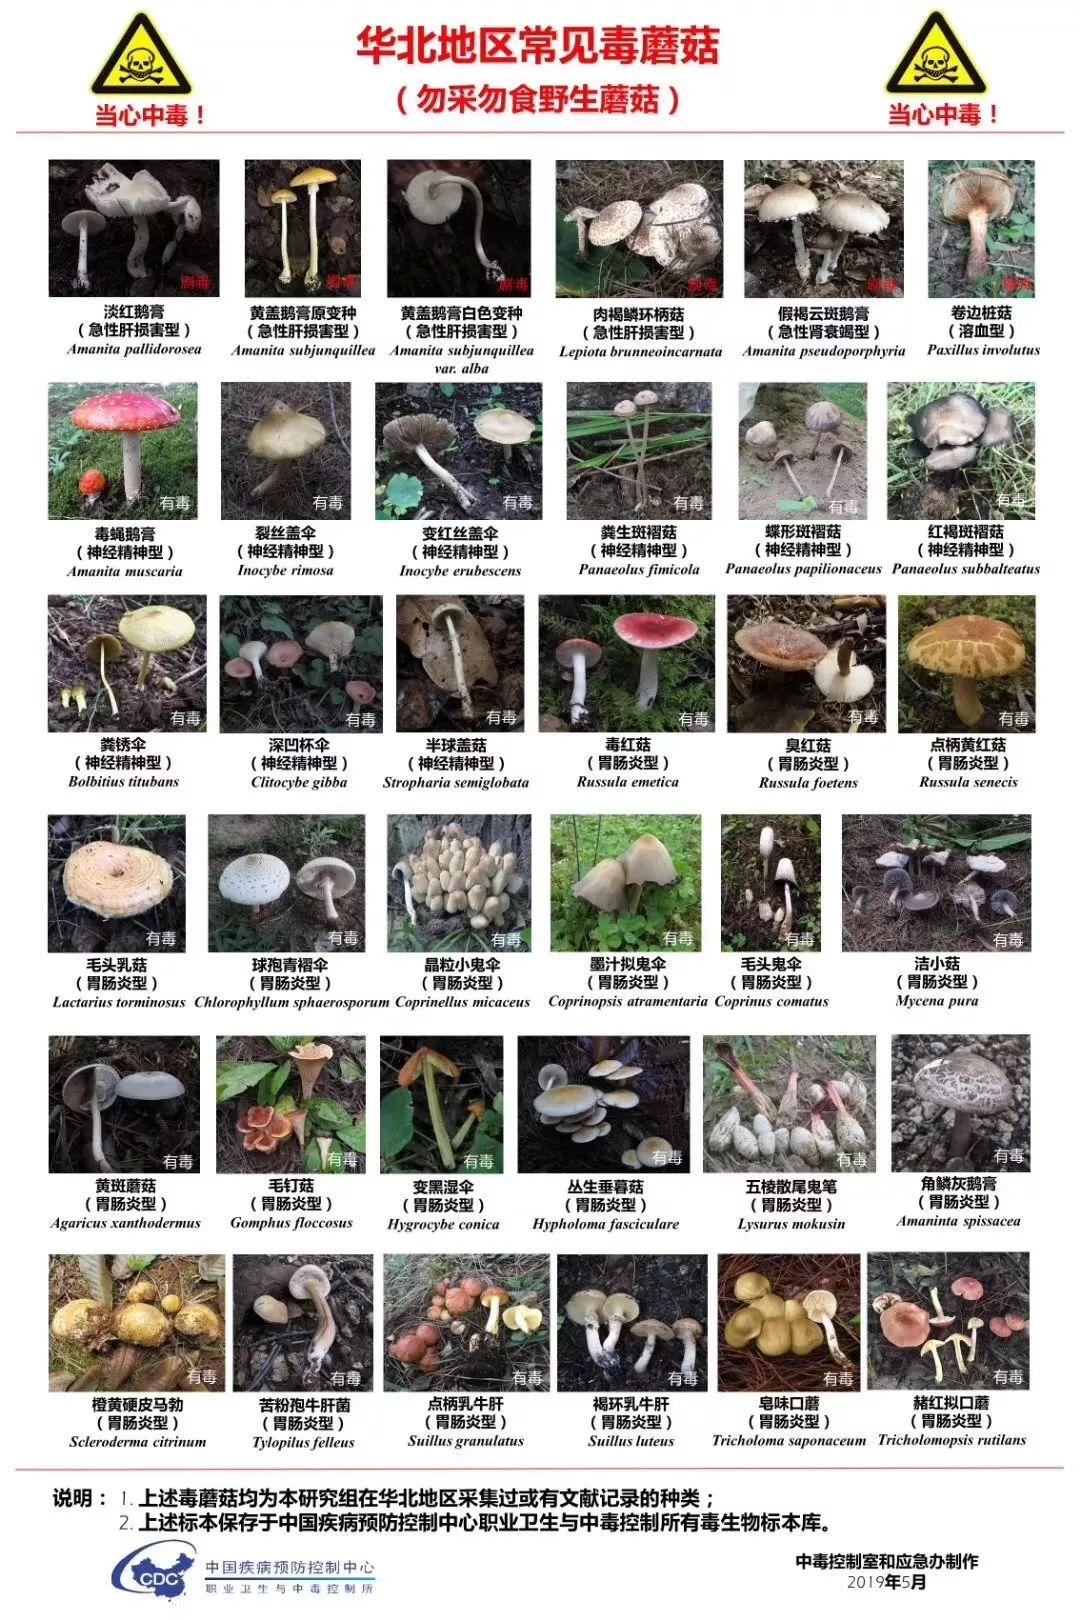 我国各地区常见毒蘑菇图谱,值得收藏!